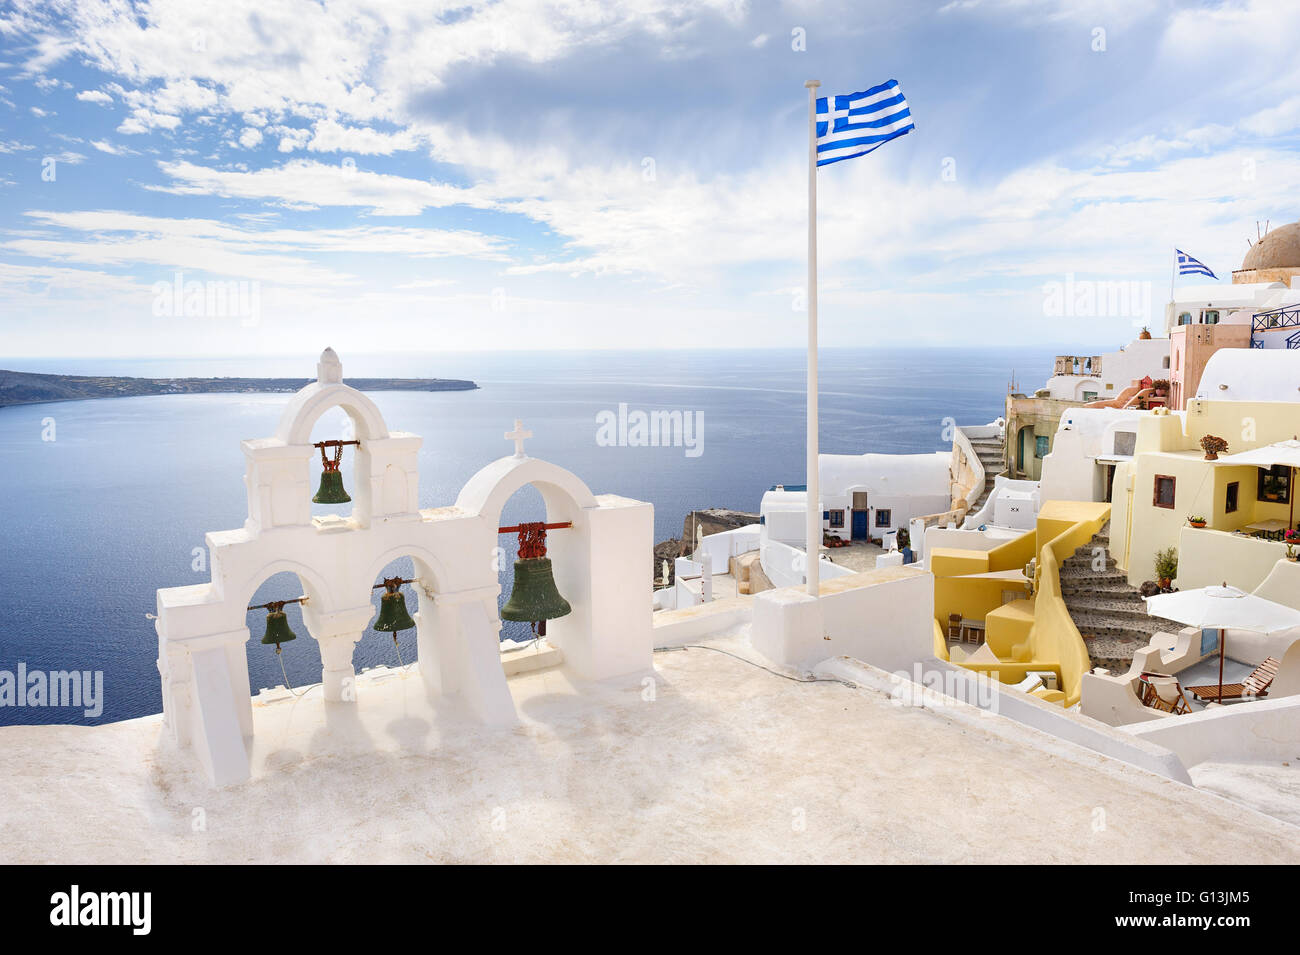 Oia view at Santorini, Greece Stock Photo